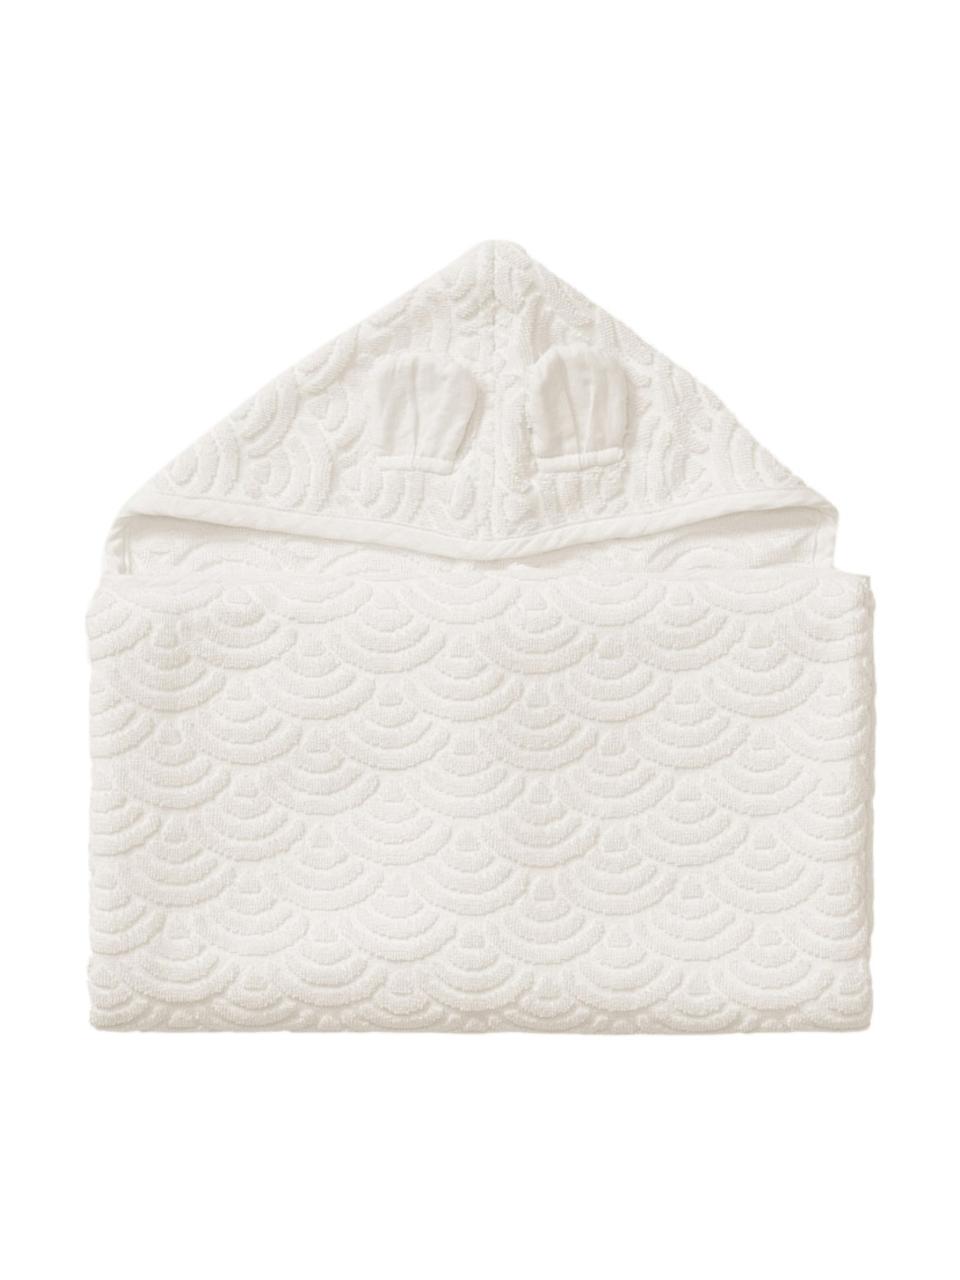 Ręcznik dla dzieci z bawełny organicznej Rabbit, 100% bawełna organiczna z certyfikatem GOTS, Kremowobiały, S 70 x D 130 cm